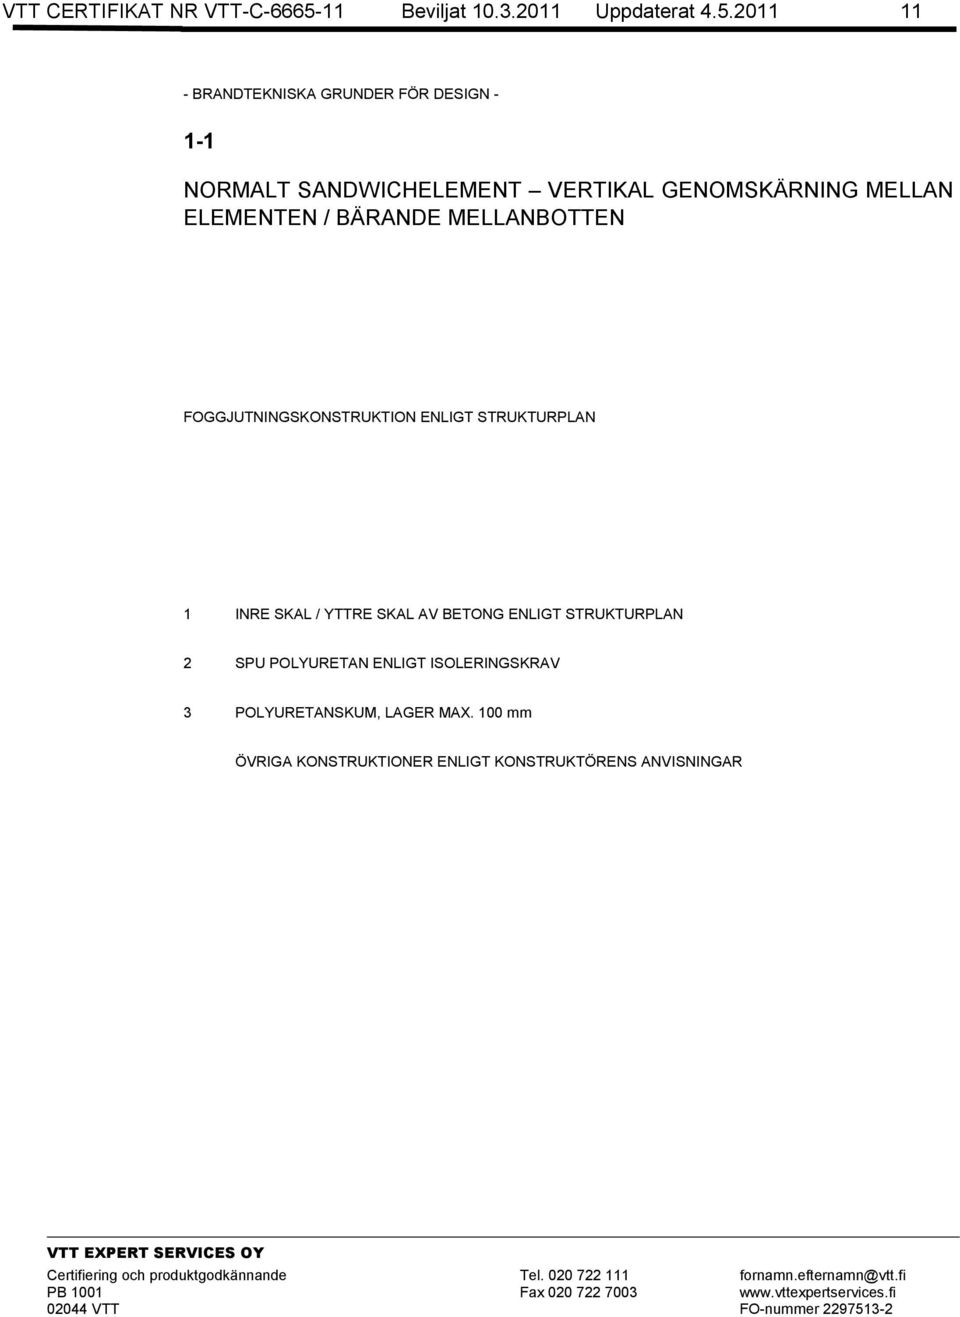 2011 11 - BRANDTEKNISKA GRUNDER FÖR DESIGN - 1-1 NORMALT SANDWICHELEMENT VERTIKAL GENOMSKÄRNING